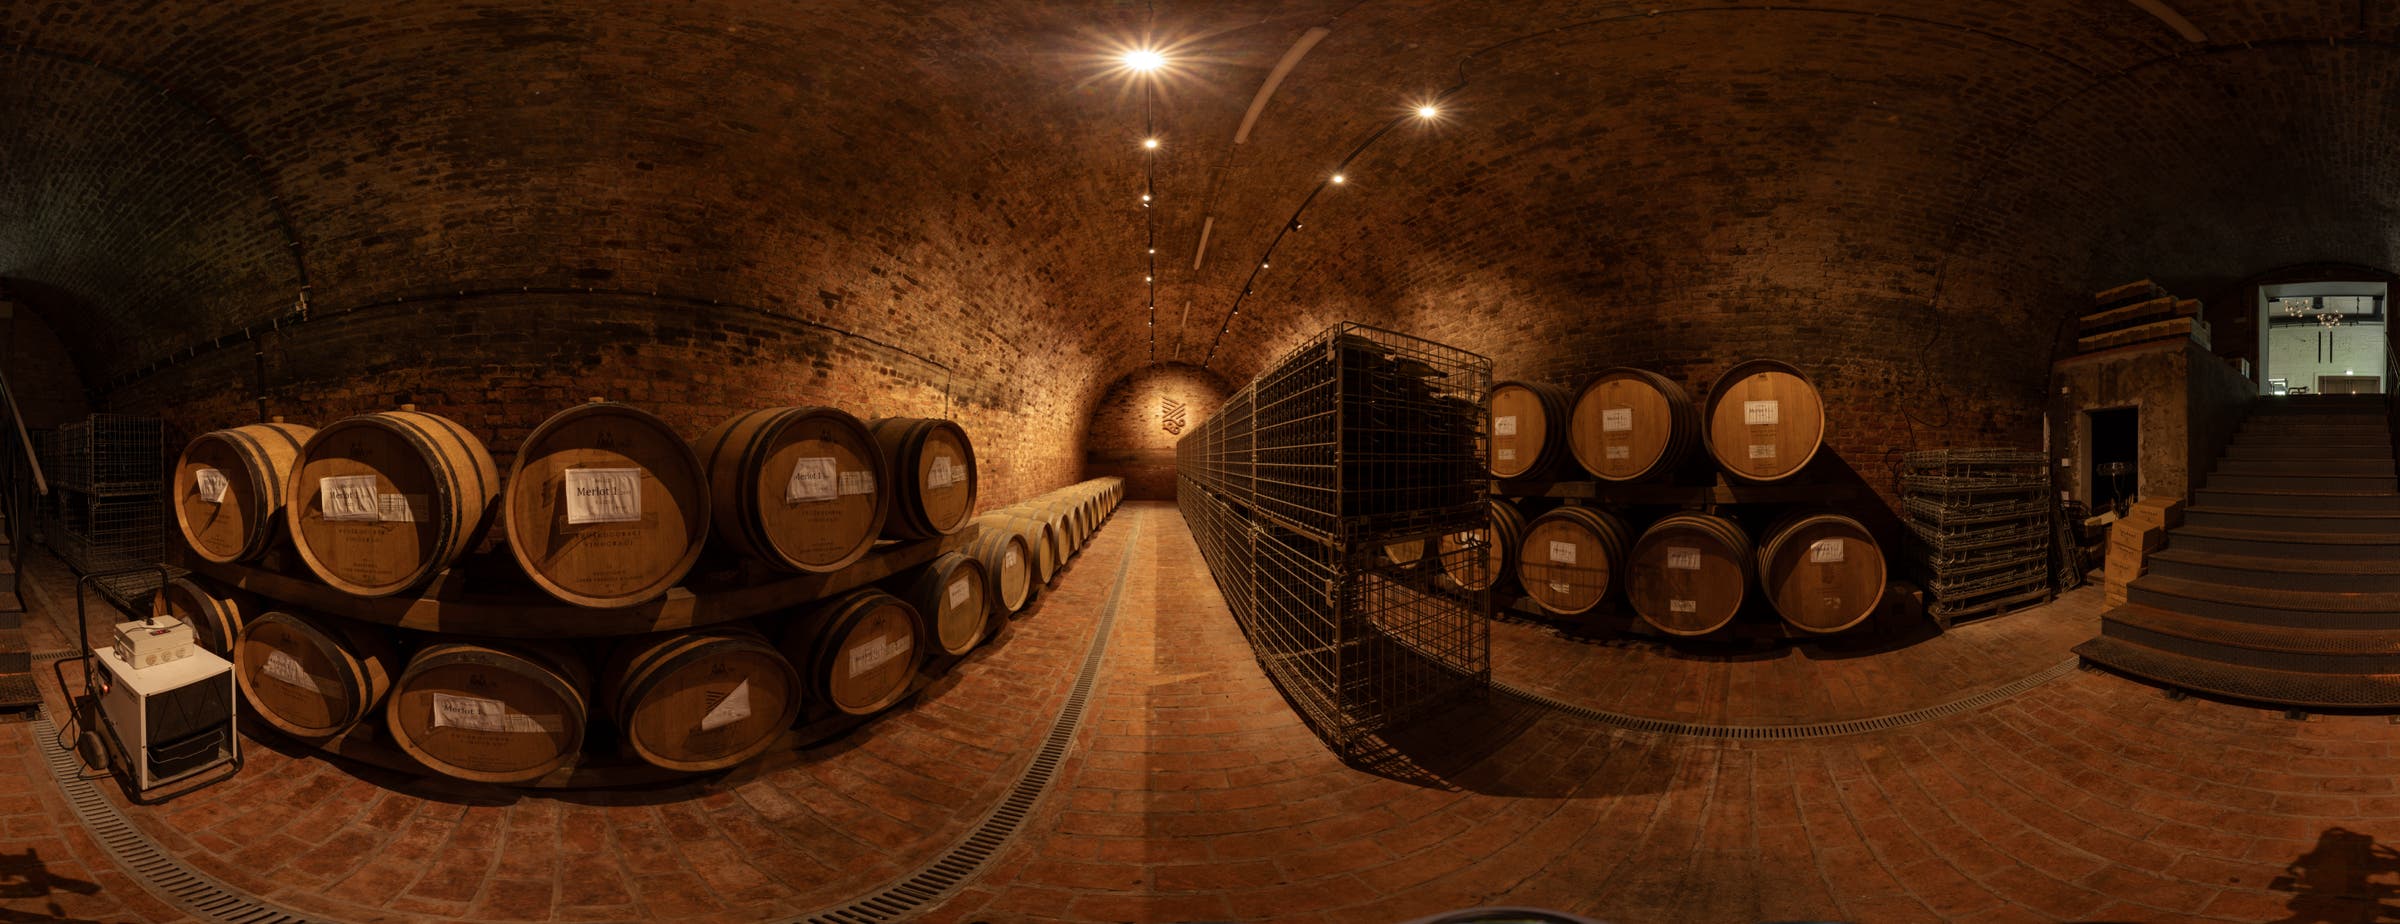 Η εικόνα δείχνει μια άποψη 360° ενός κελάρι κρασιών που χρησιμοποιείται για την αποθήκευση βαρελιών κατά μήκος των τοίχων. Στη μέση της αίθουσας, κατά μήκος του διαδρόμου, τοποθετούνται μεταλλικά κουτιά για την αποθήκευση γυάλινων φιαλών κρασιού.